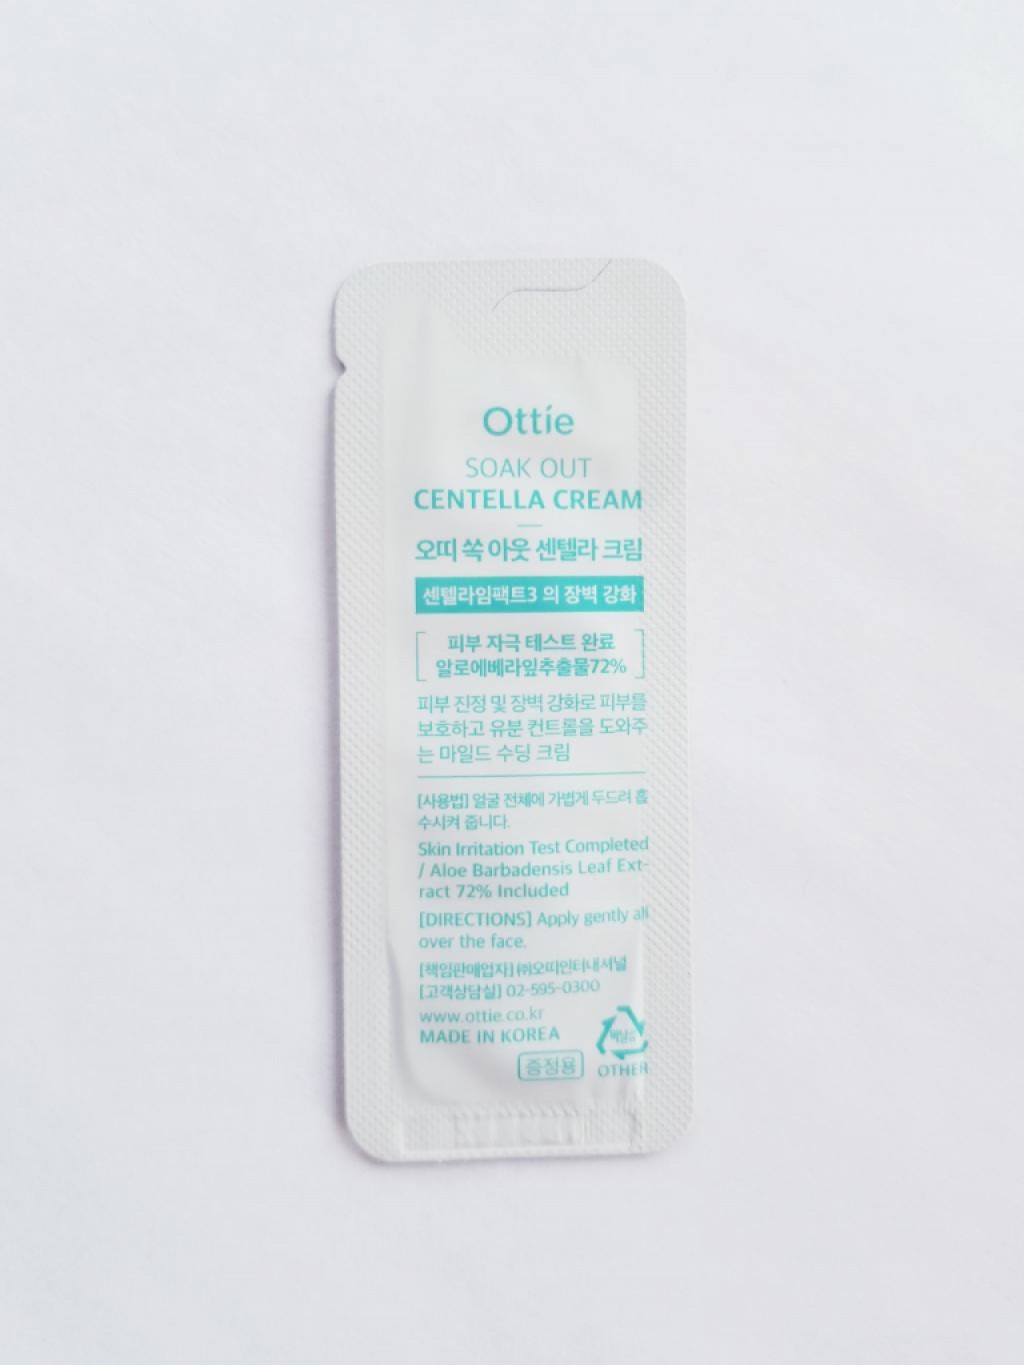 OTTIE Soak Out Centella Cream Barrier Слабокислотный успокаивающий защитный крем для проблемной кожи